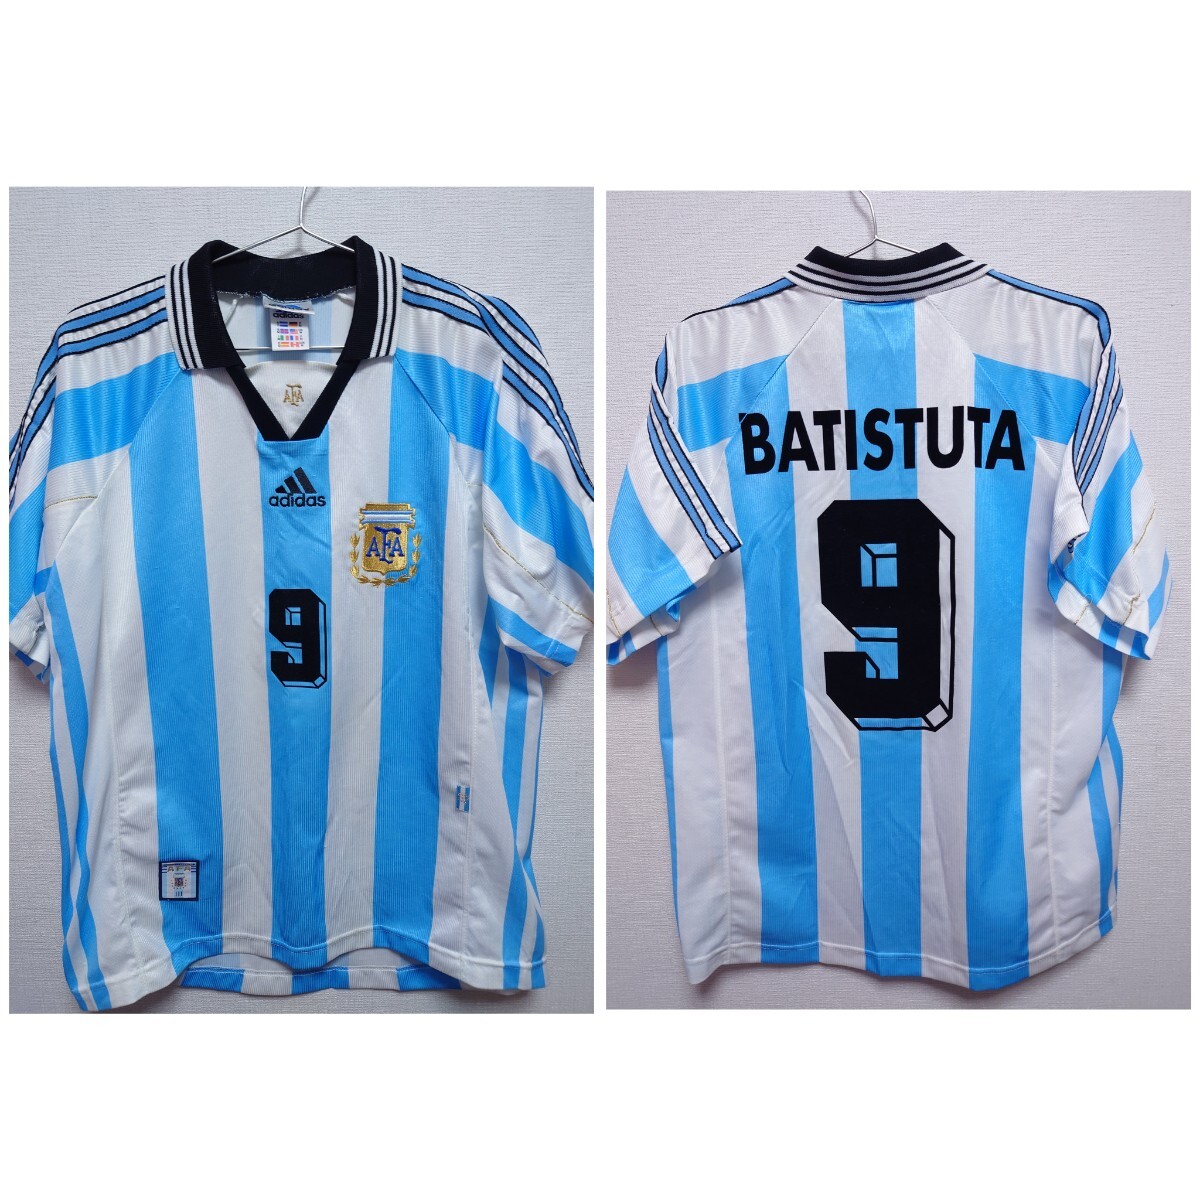 adidas 1998 World cup アルゼンチン代表 Argentina バティストゥータ Batistuta ネームナンバーフロッキーの画像1